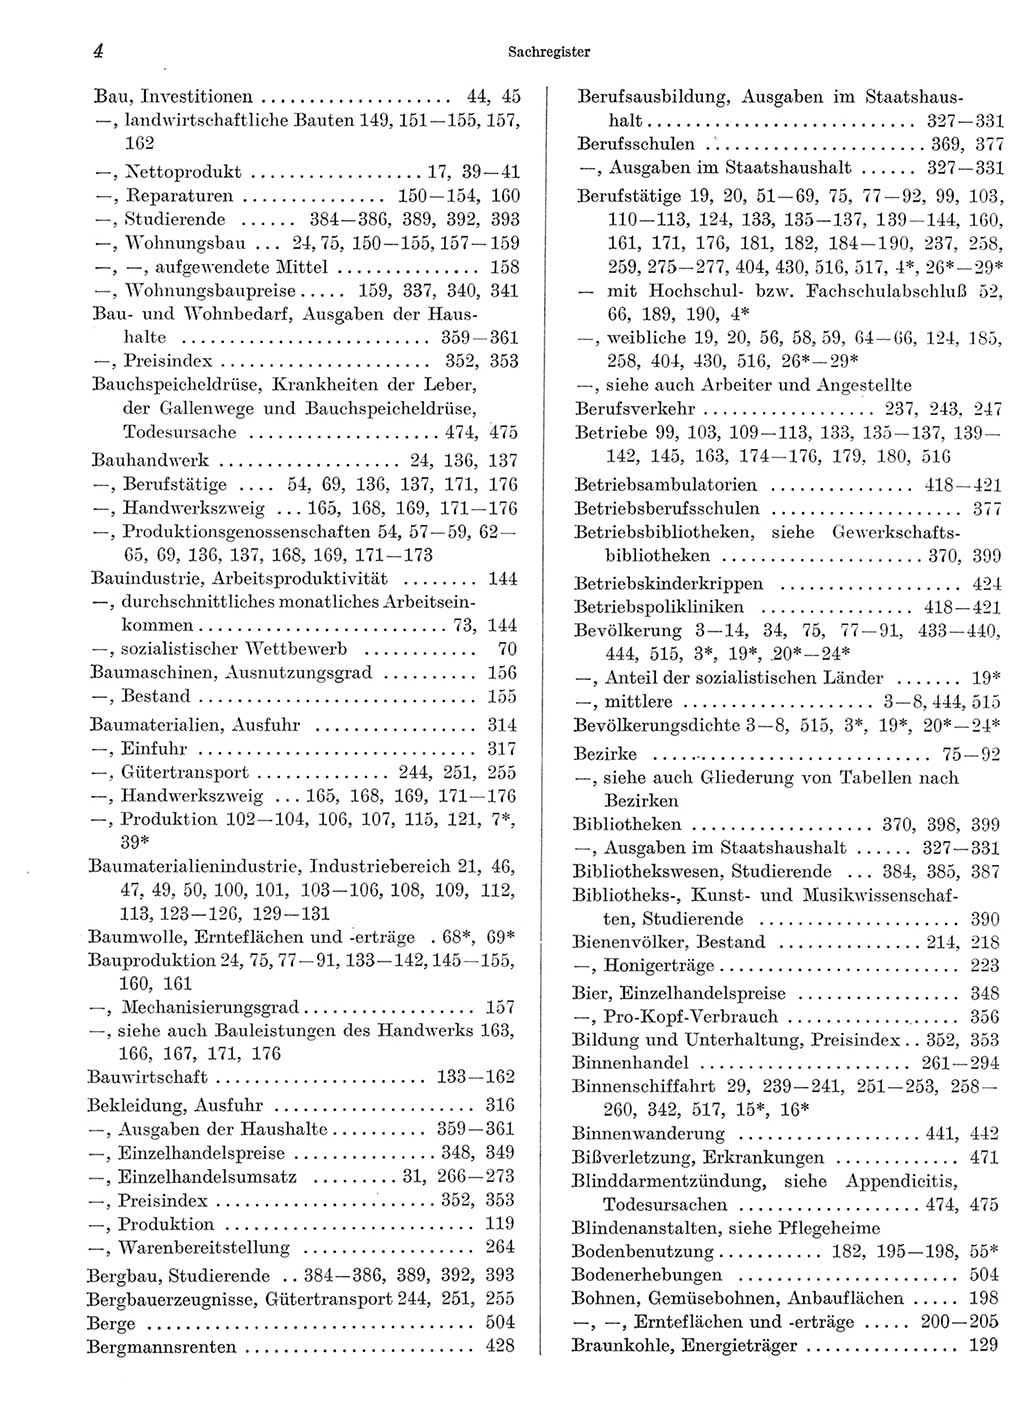 Statistisches Jahrbuch der Deutschen Demokratischen Republik (DDR) 1969, Seite 4 (Stat. Jb. DDR 1969, S. 4)